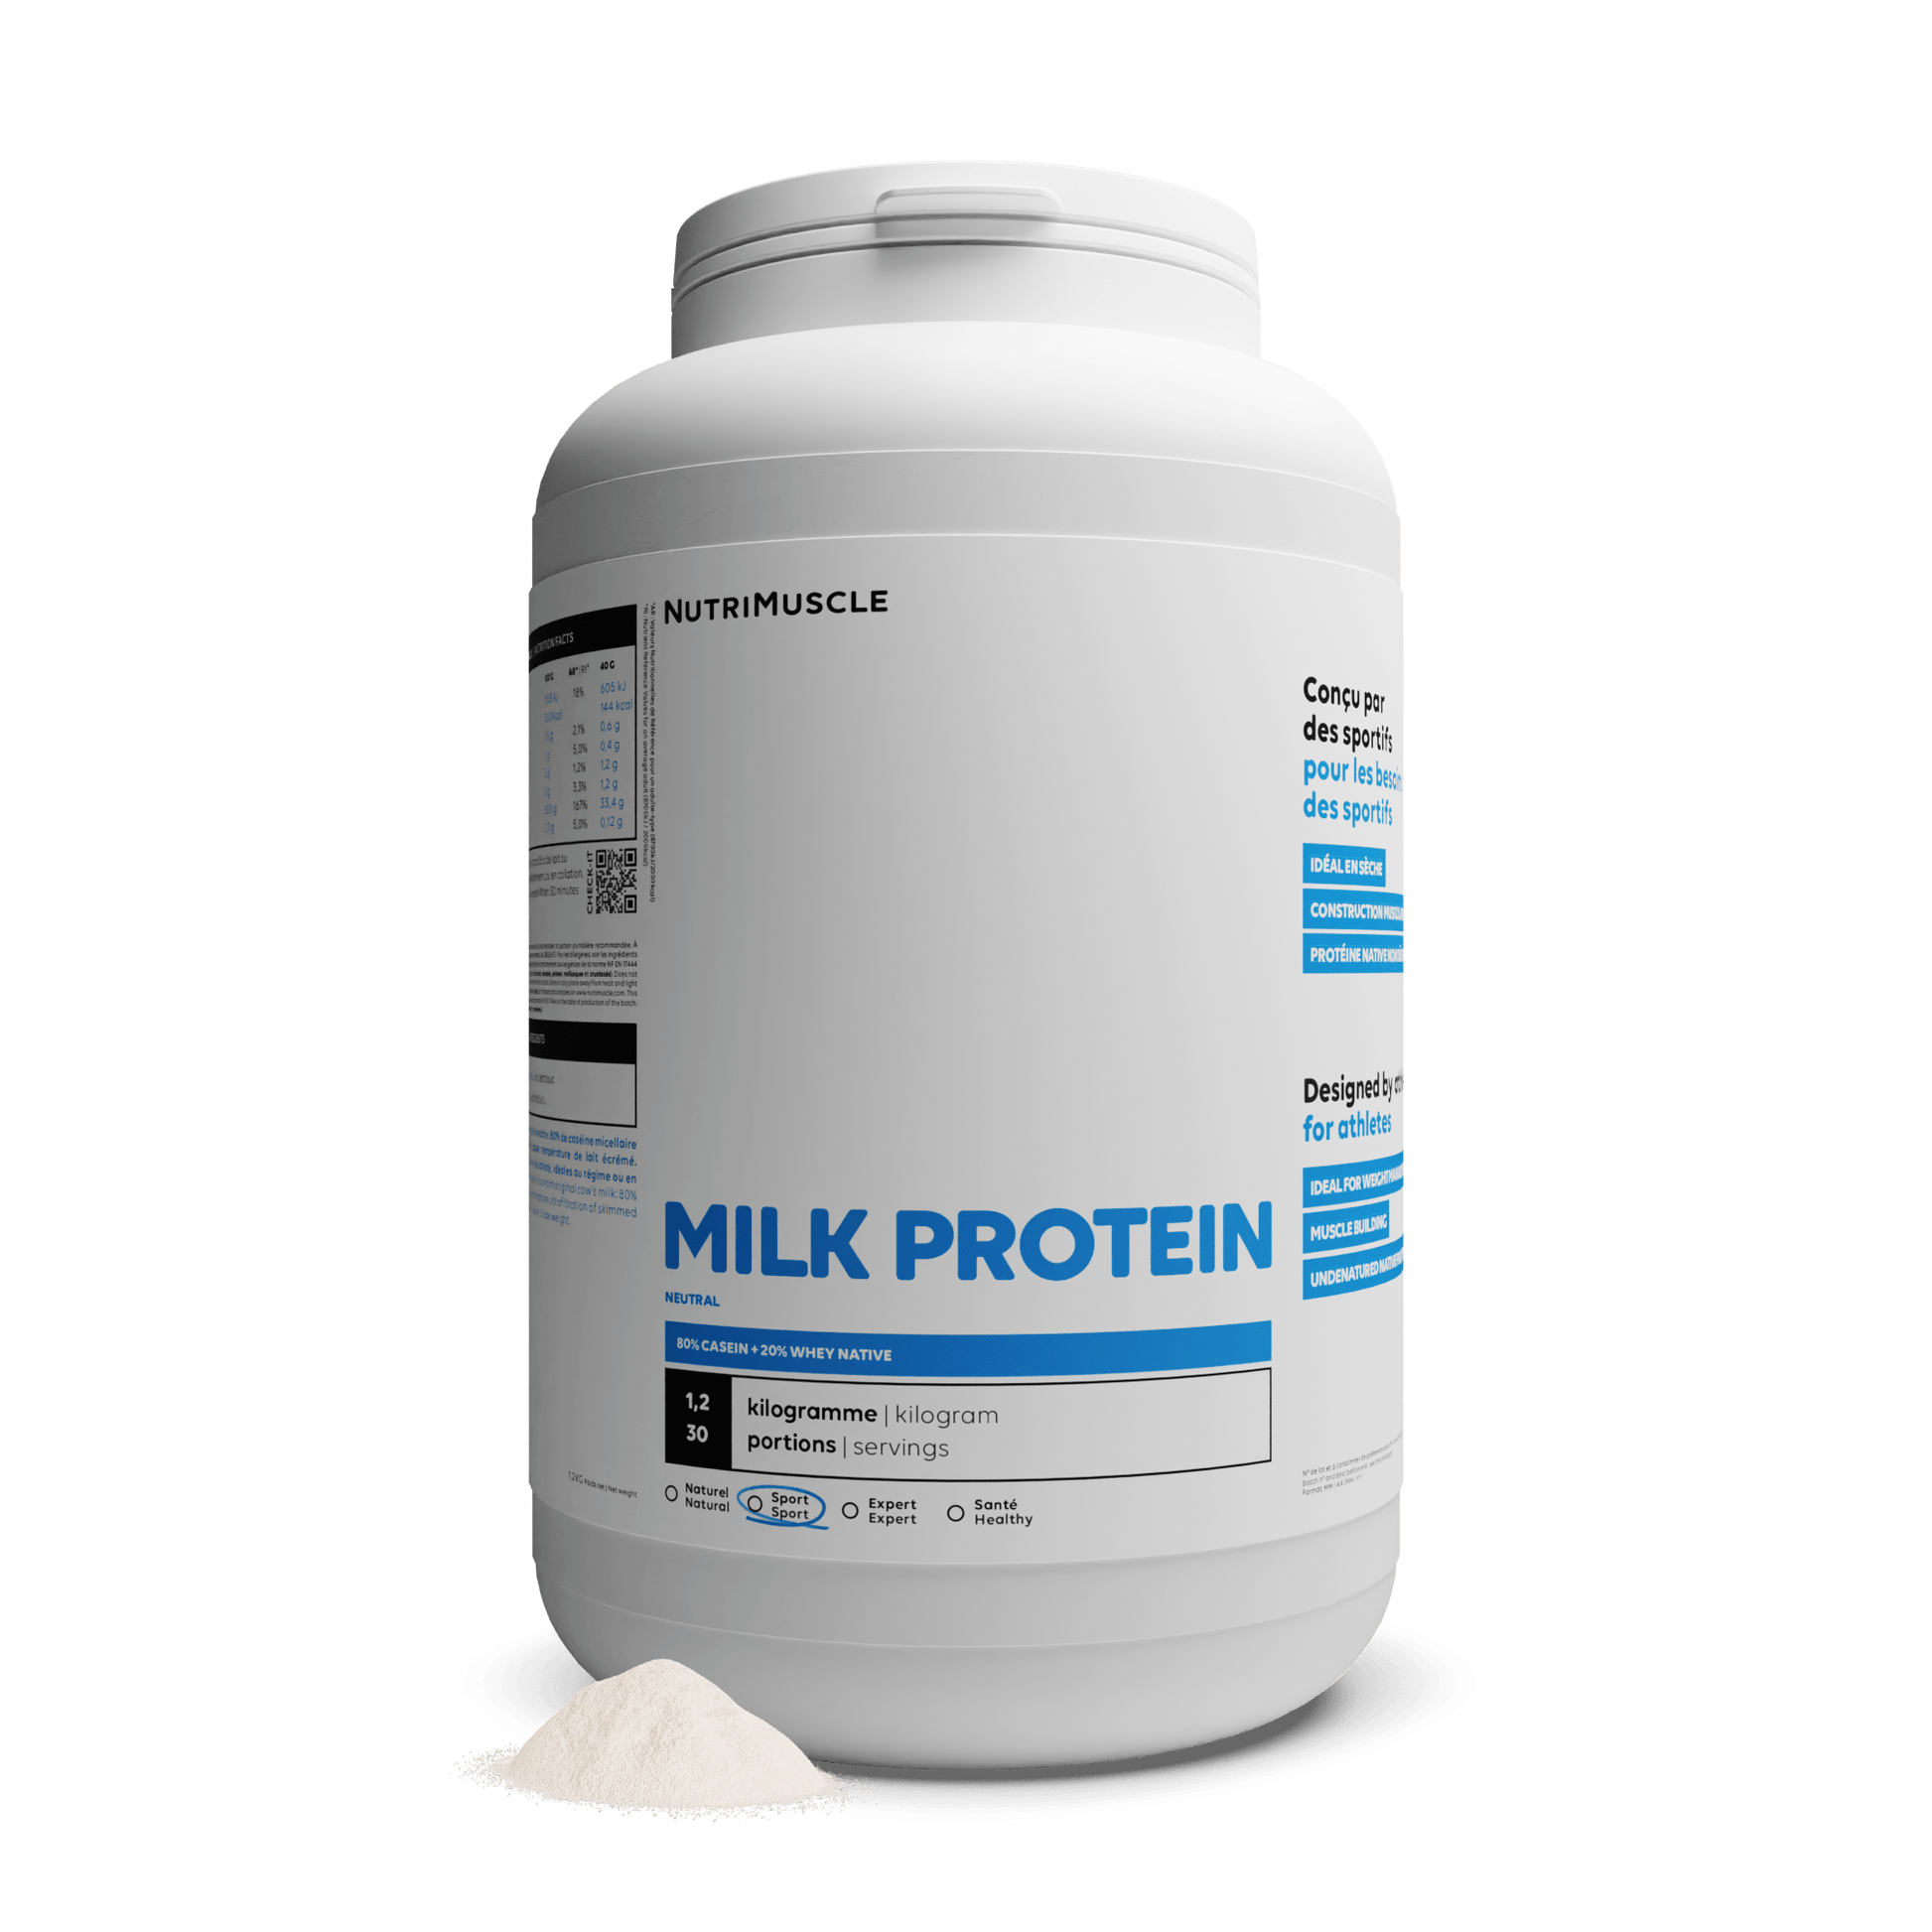 Nutrimuscle Protéines Nature / 1.20 kg Protéines Totales